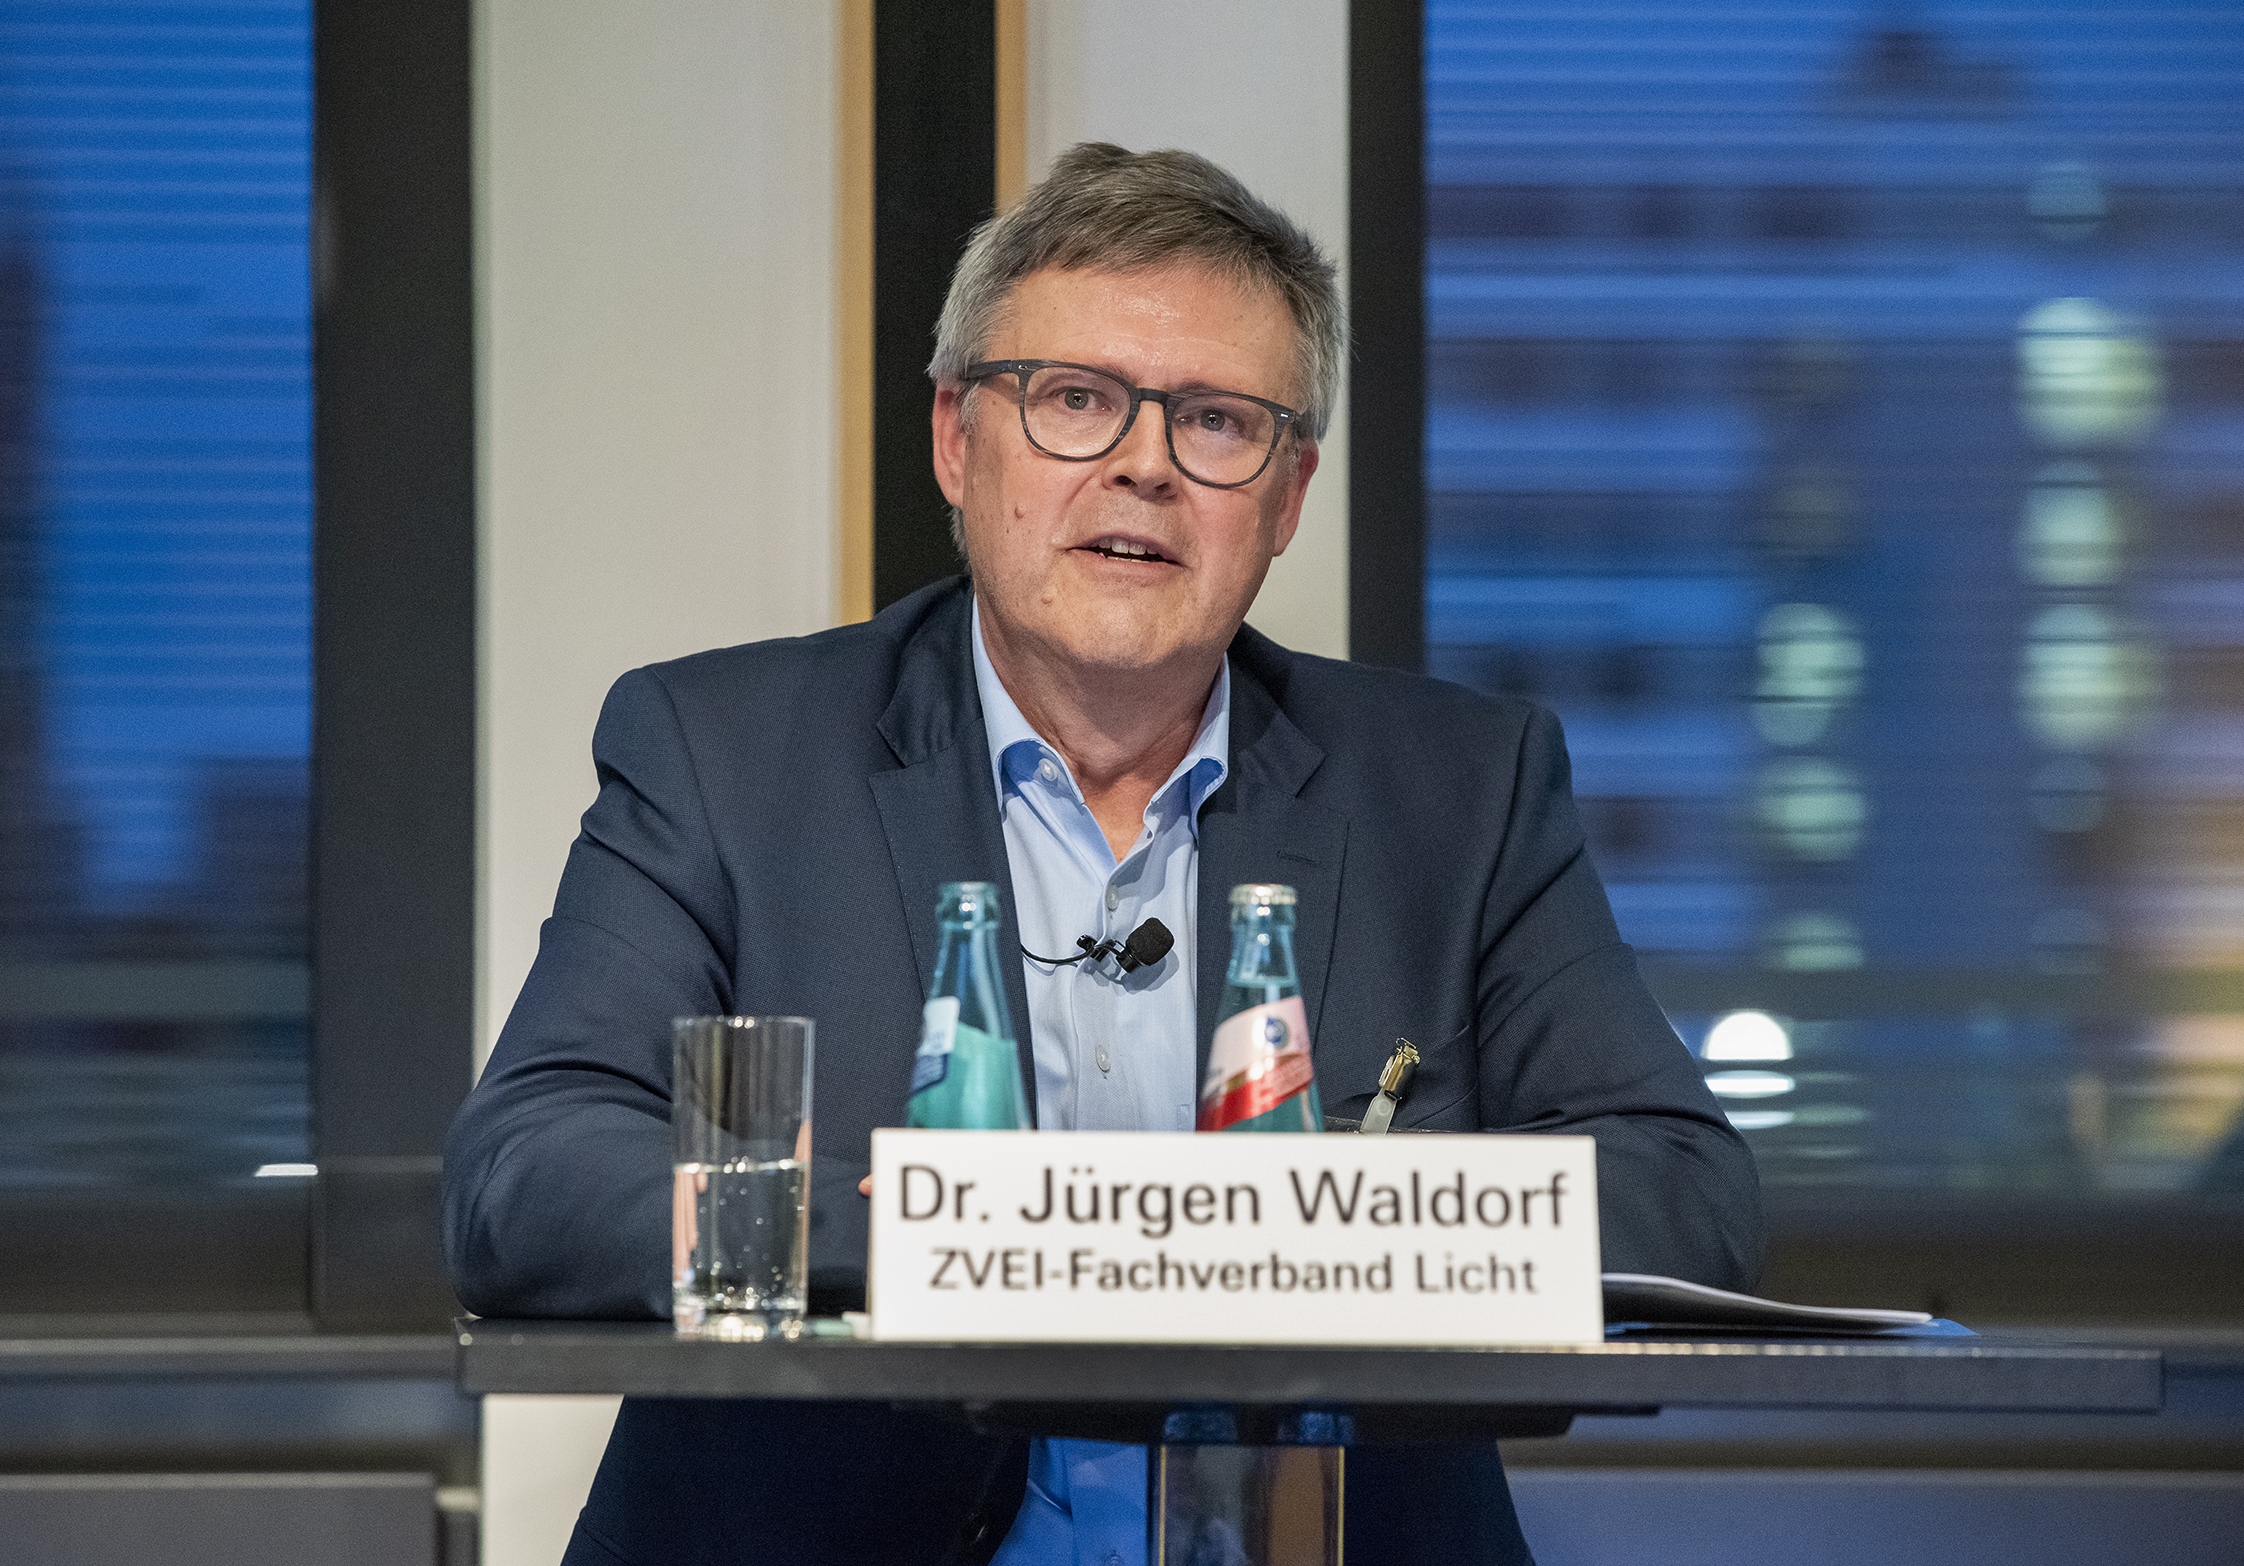 Dr. Jürgen Waldorf, Geschäftsführer Fachverband Licht ZVEI (Zentralverband Elektrotechnik- und Elektronikindustrie)